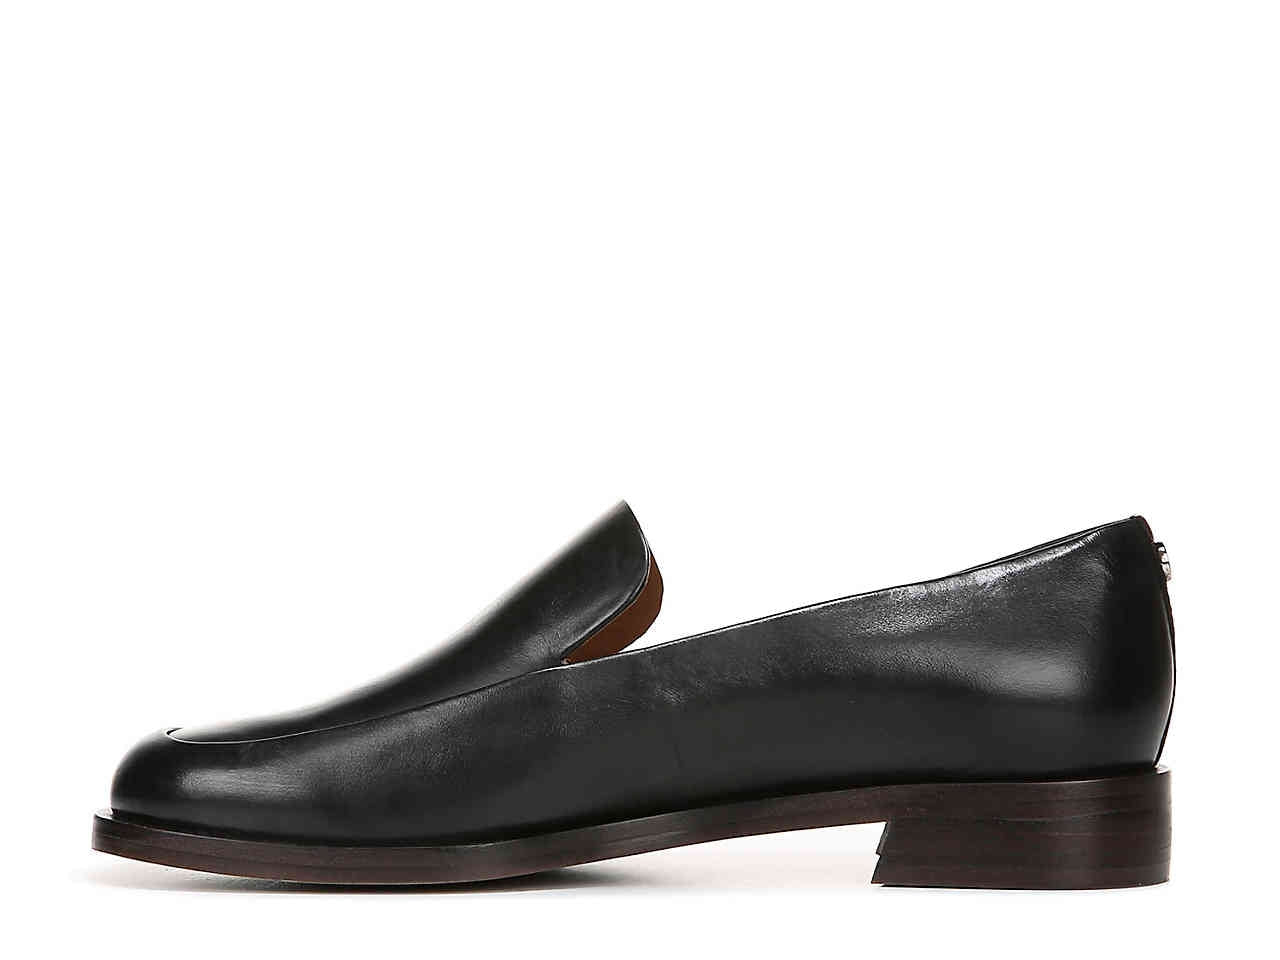 Marsalla Black Leather Franco Sarto Loafers